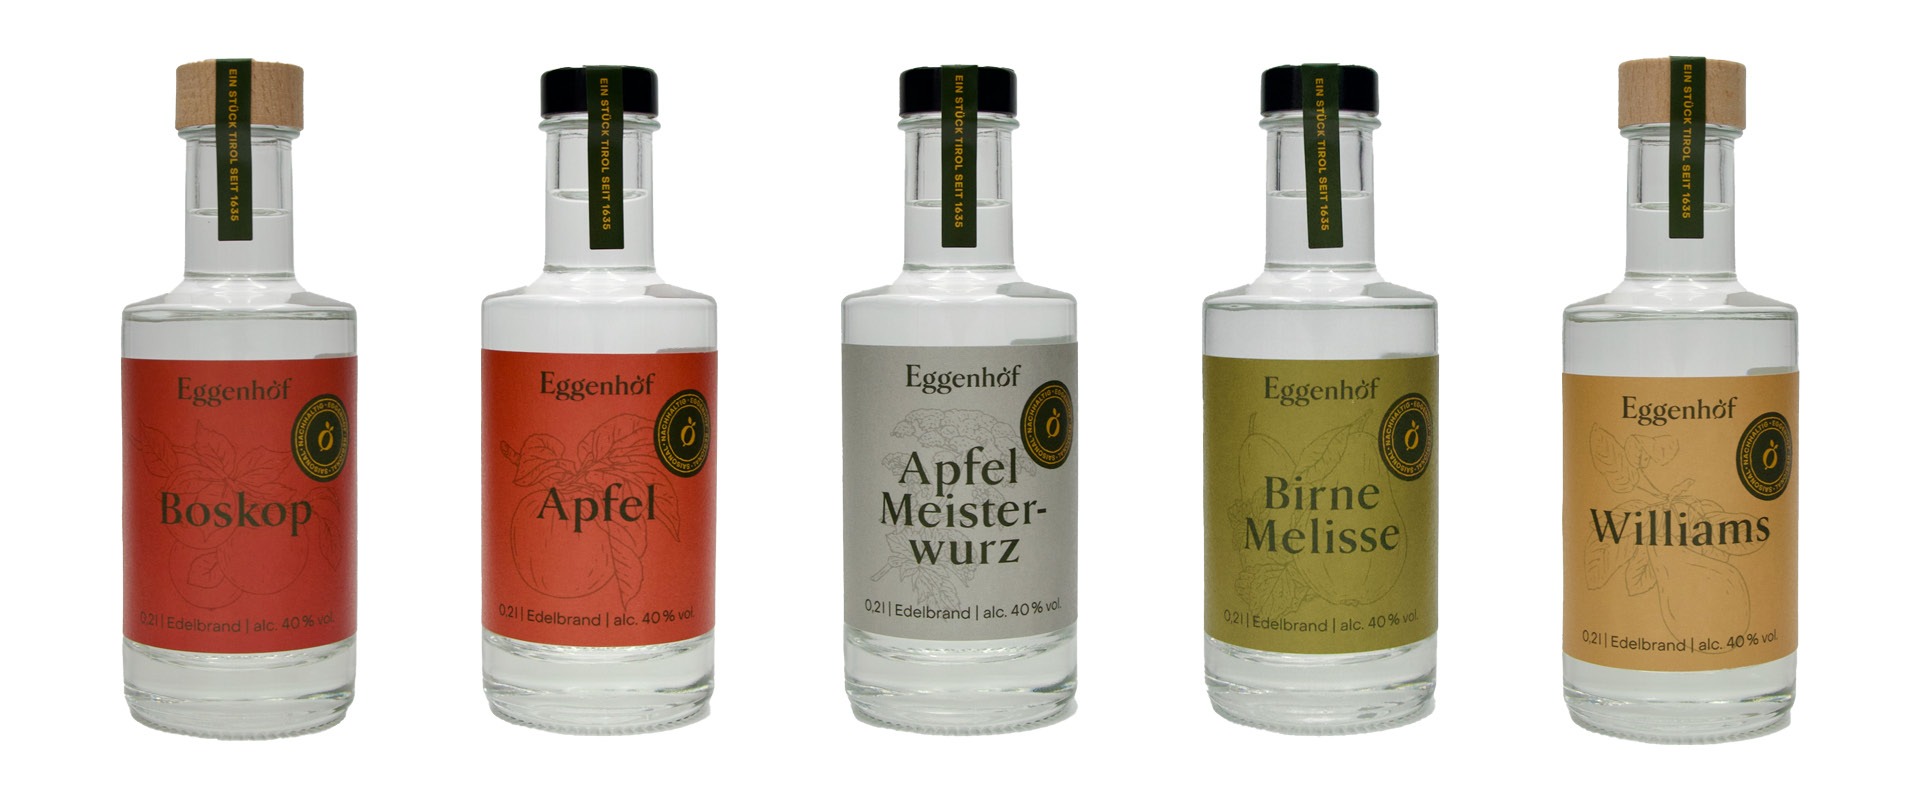 Fünf Flaschen Gin vom Eggenhof mit unterschiedlichen Etiketten.